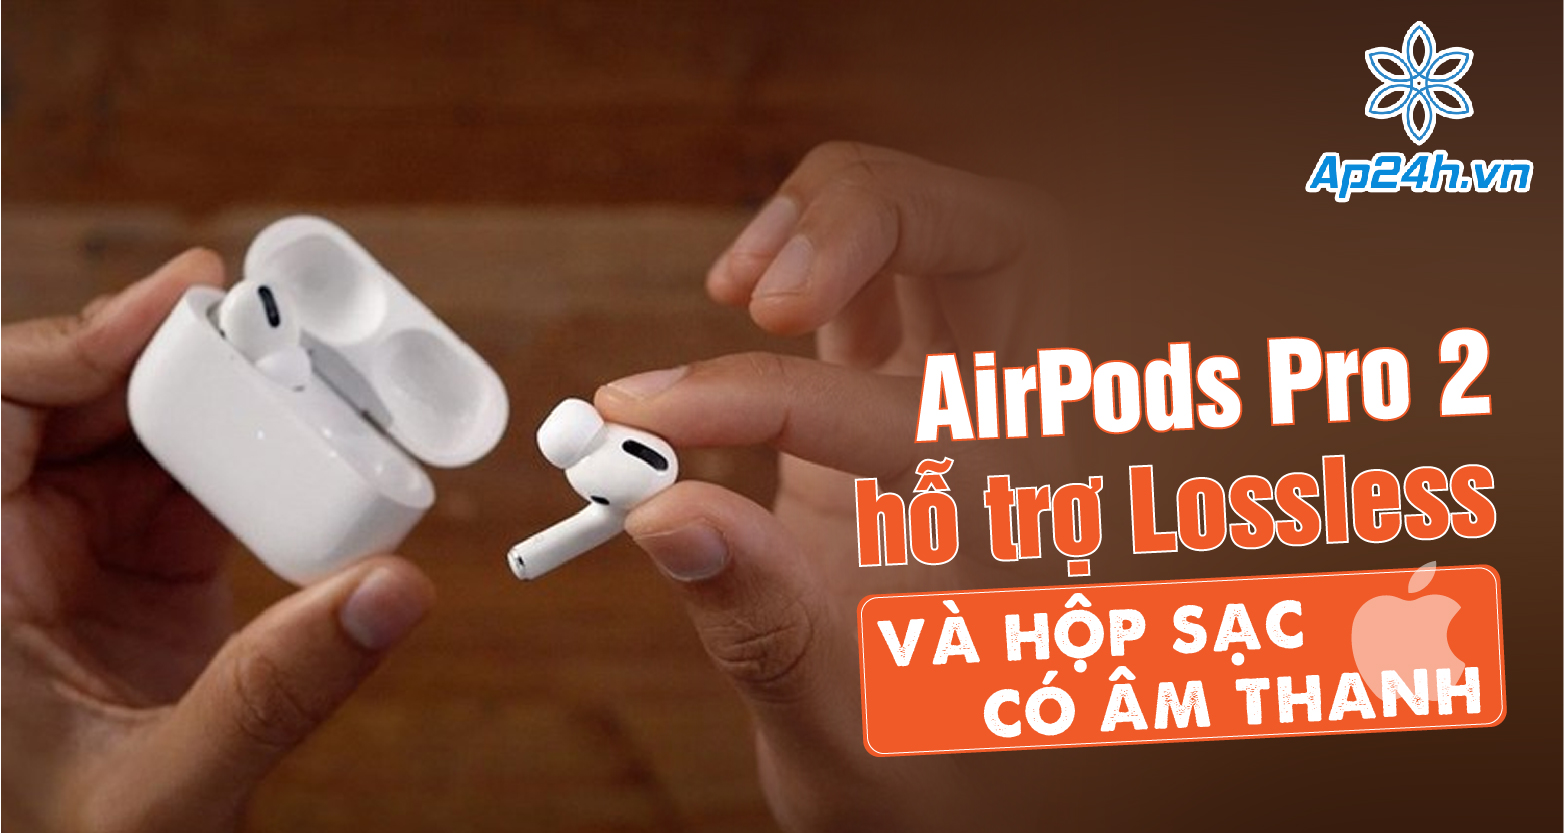 AirPods Pro 2 hỗ trợ Lossless và hộp sạc có âm thanh